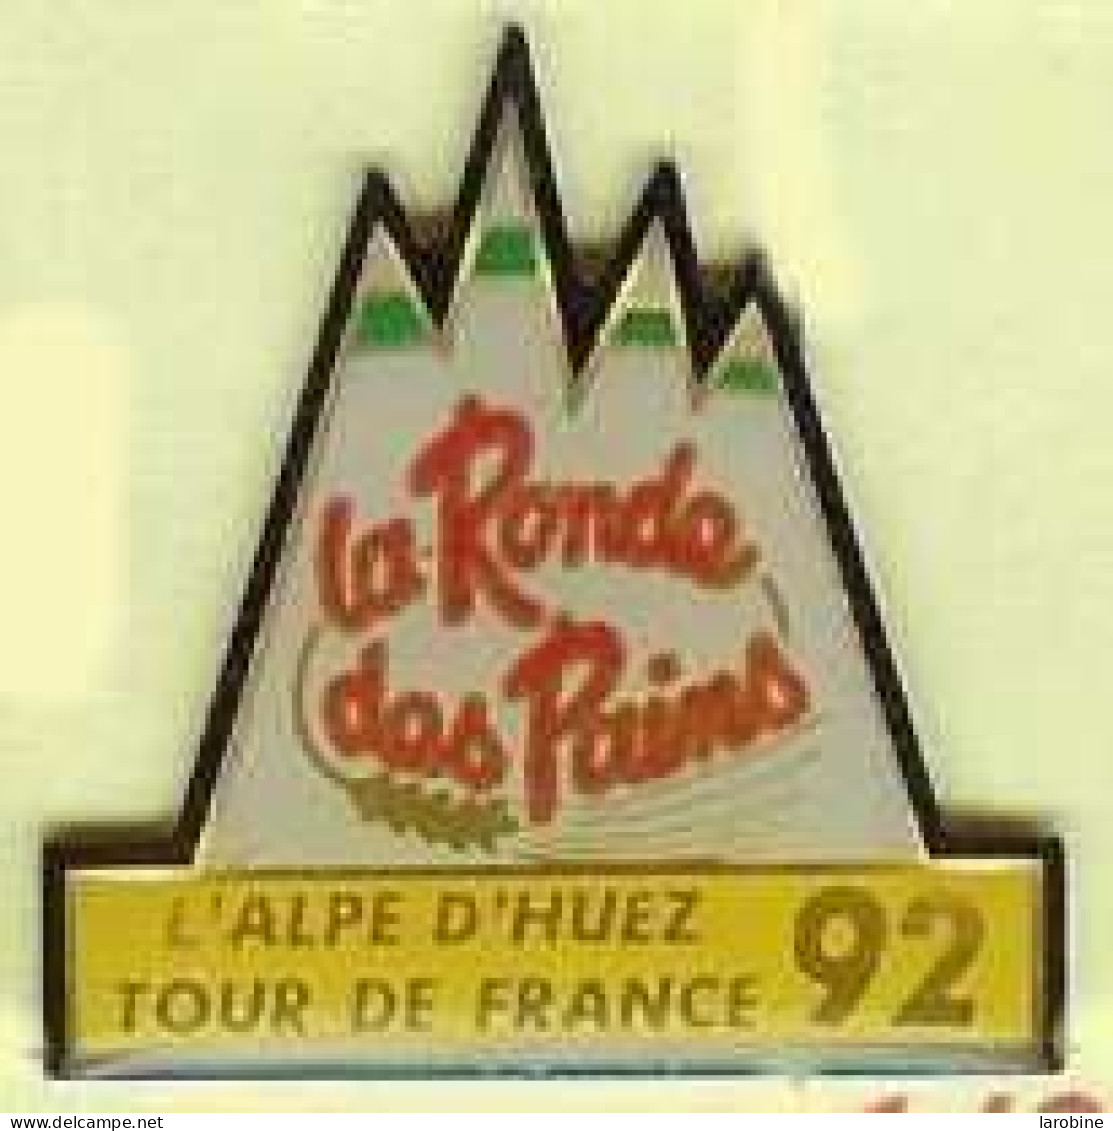 @@ Vélo Cycle Cycliste Tour De France L' Alpe D'Huez 1992 La Ronde Des Pains @@ve82b - Ciclismo